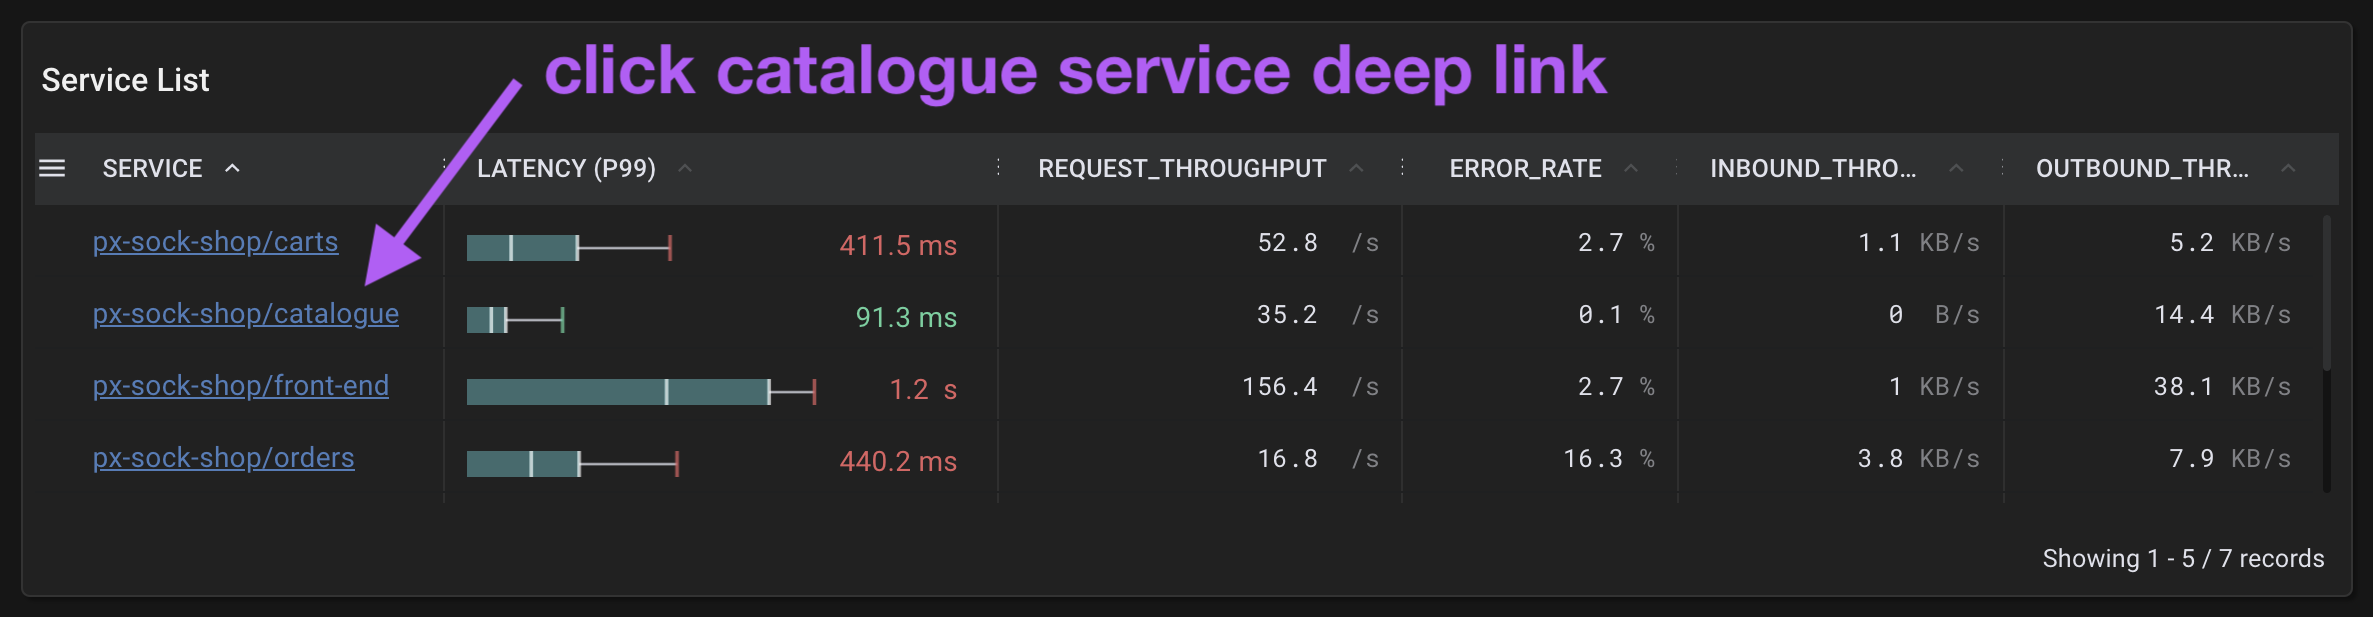 service_deeplink